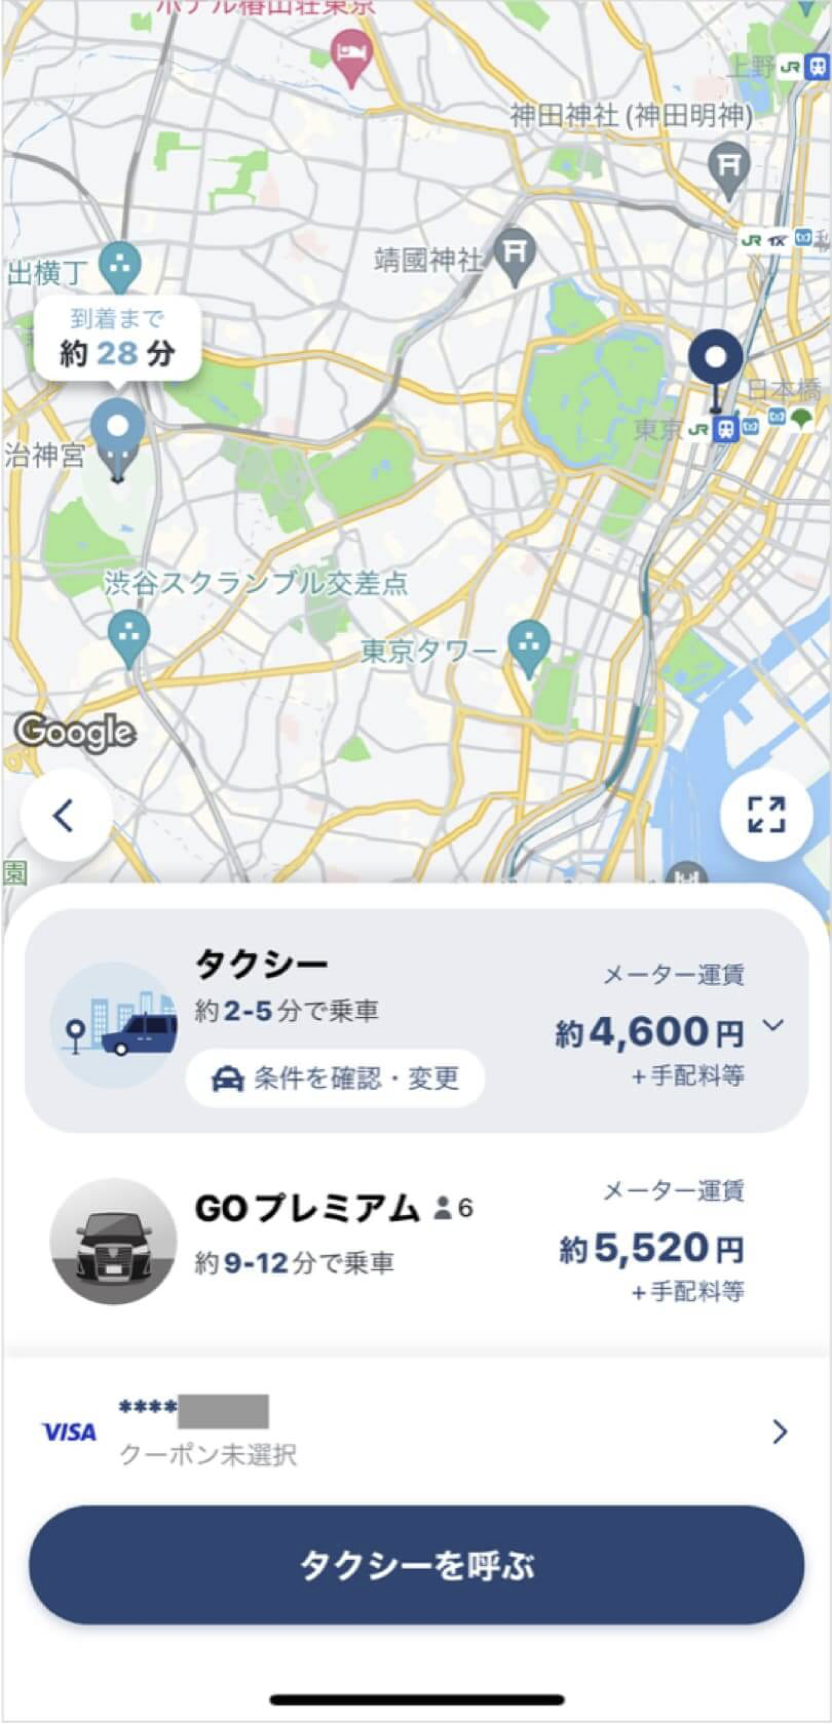 東京駅から明治神宮までのタクシー料金・所要時間まとめ